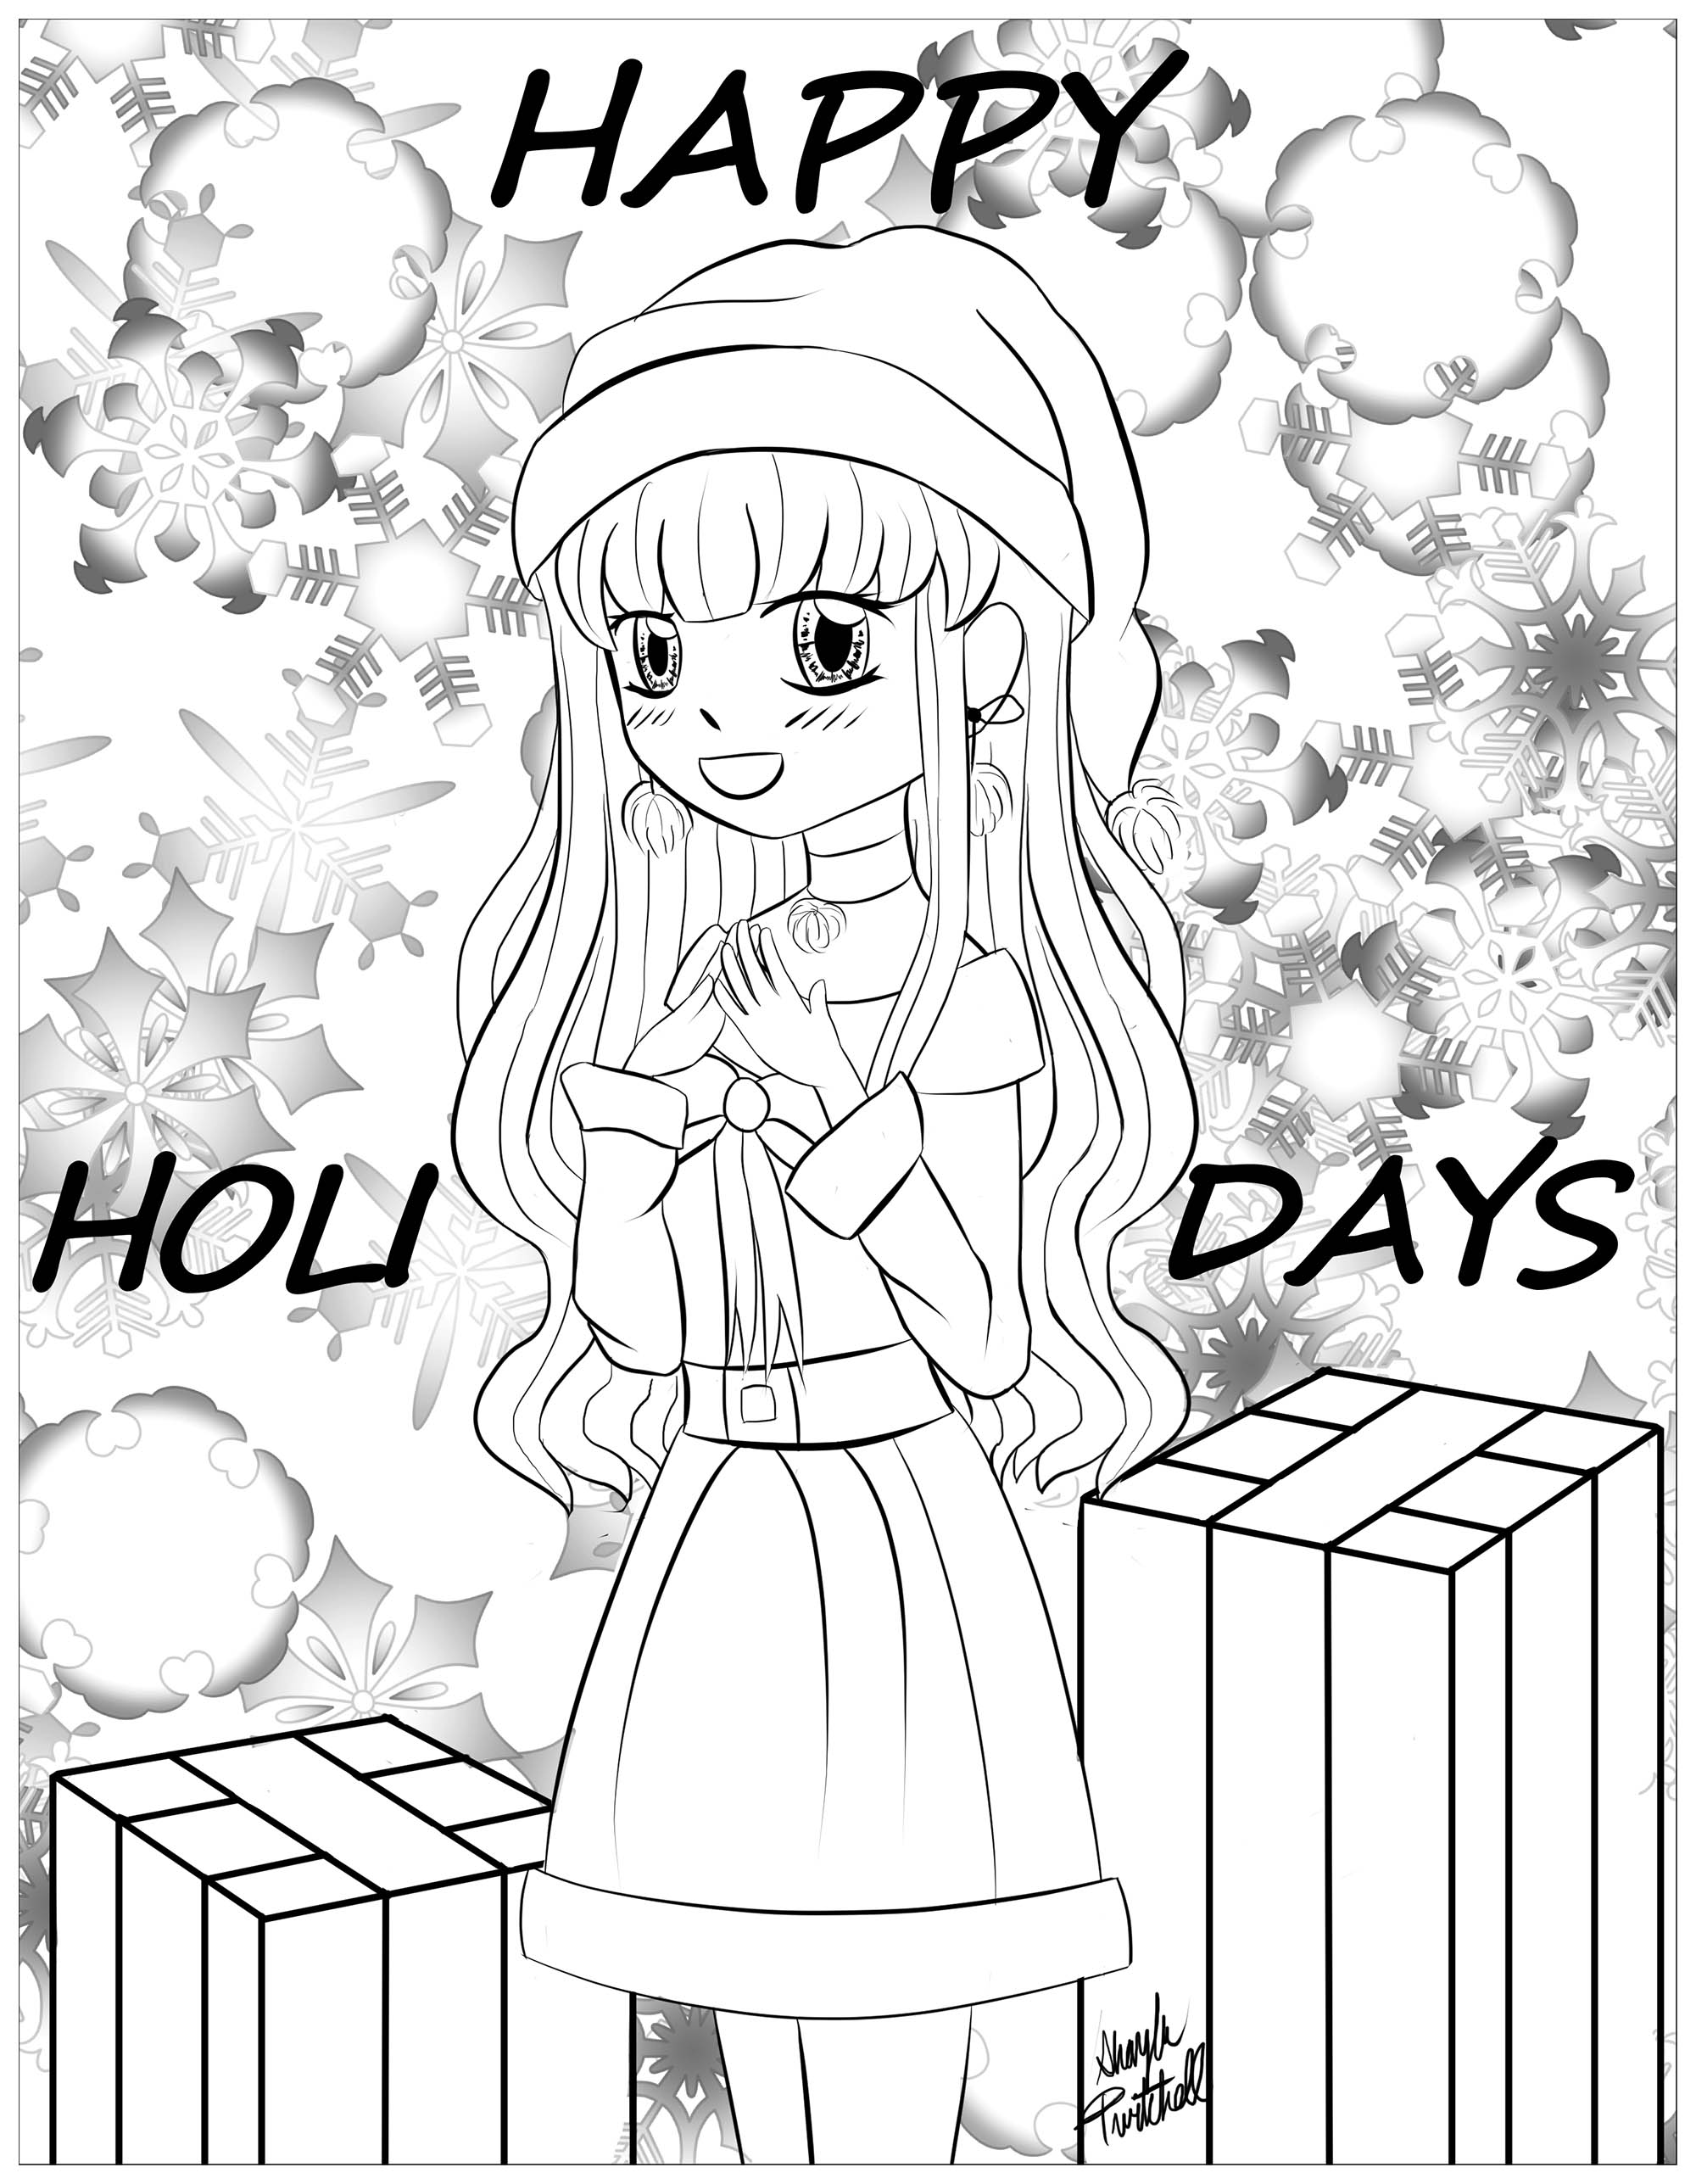 Christmas girl manga style - Christmas ...